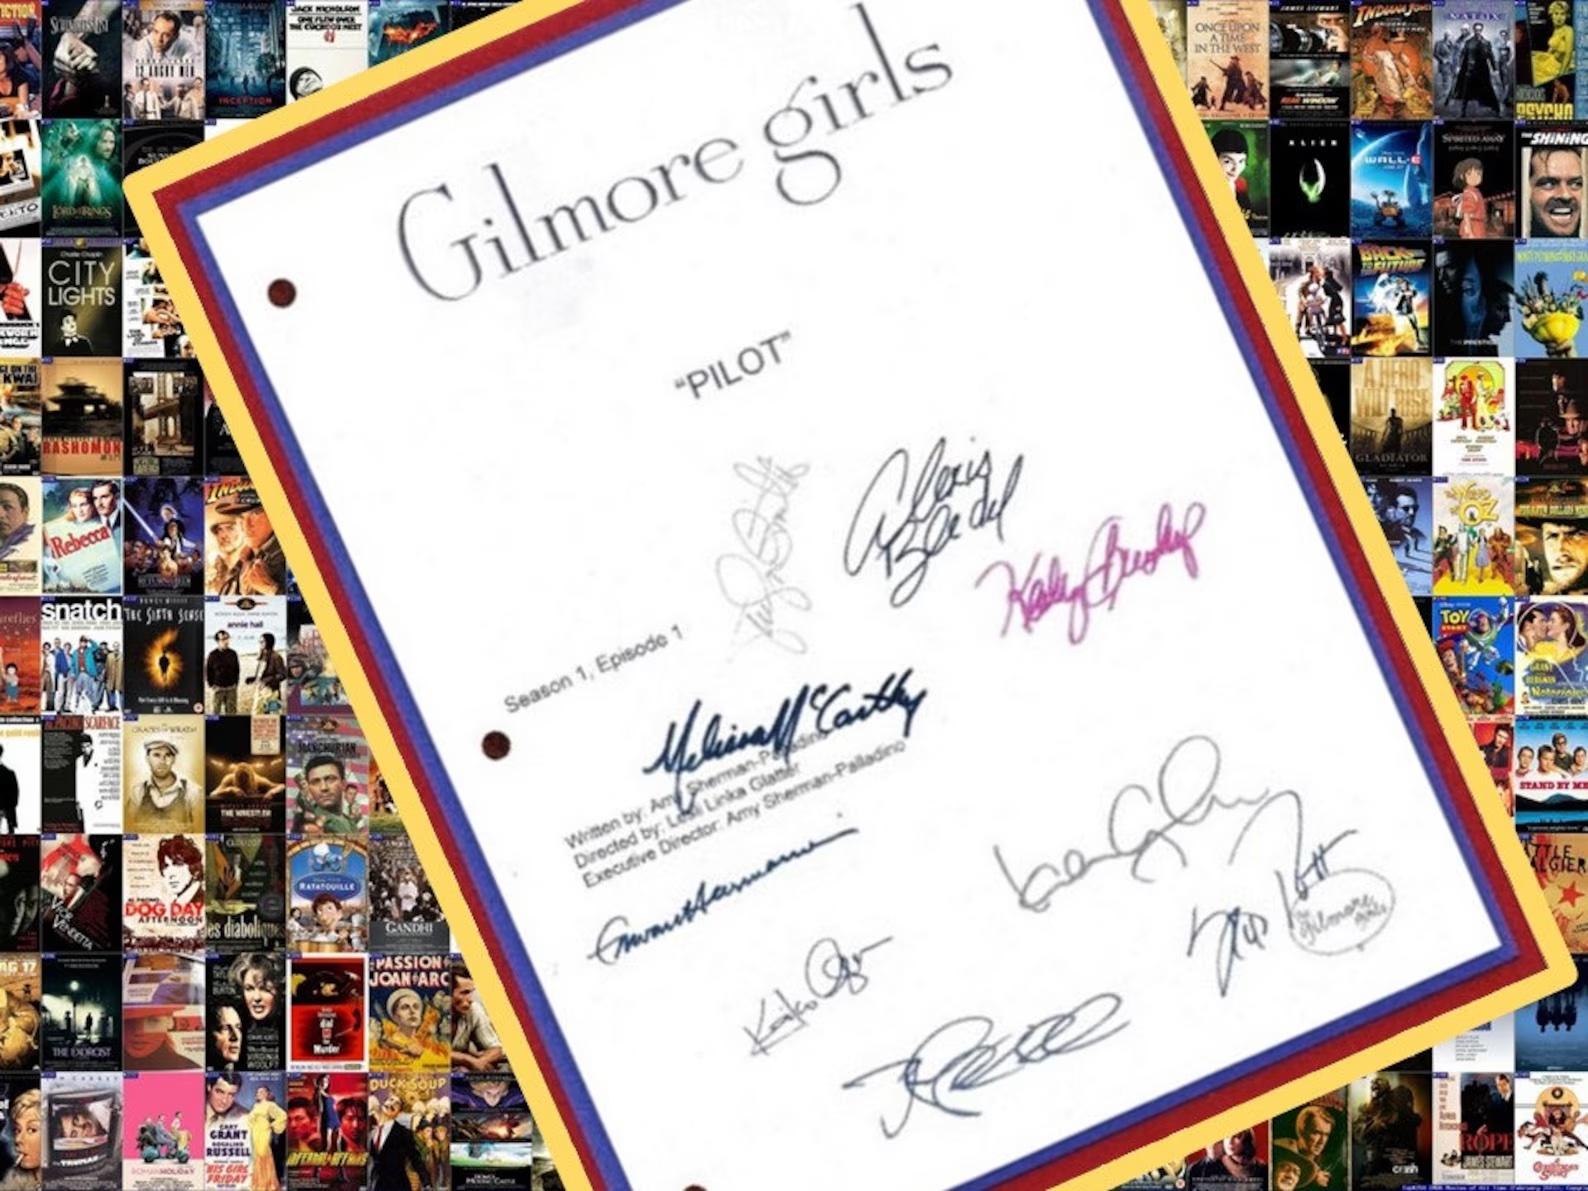 cópia assinada do roteiro do piloto de Gilmore Girls